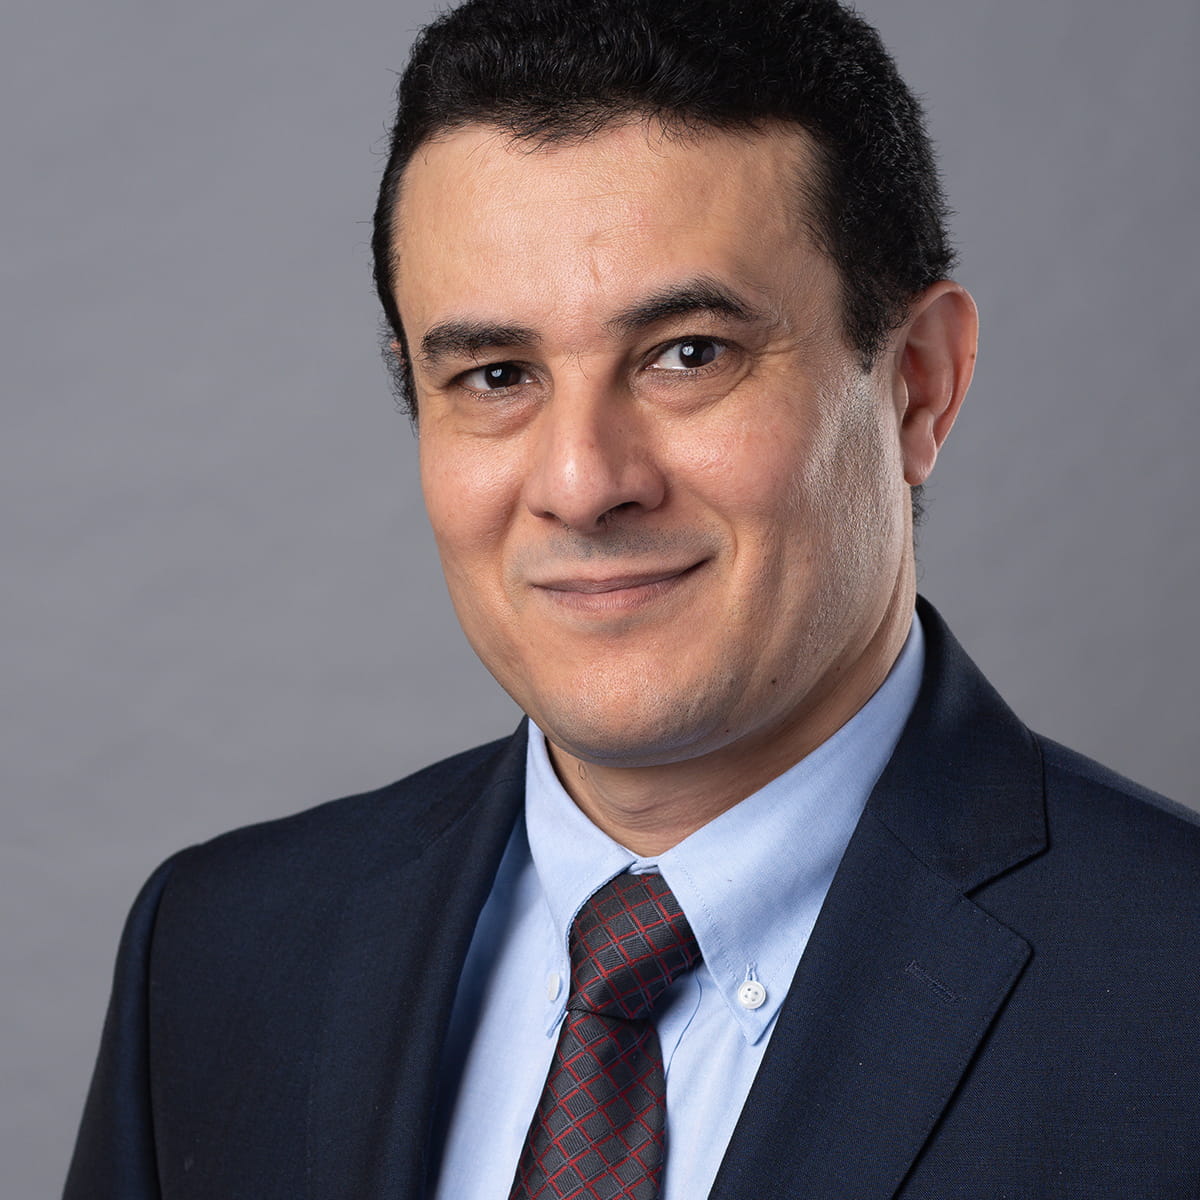 A friendly headshot of Talal Gharir, MD